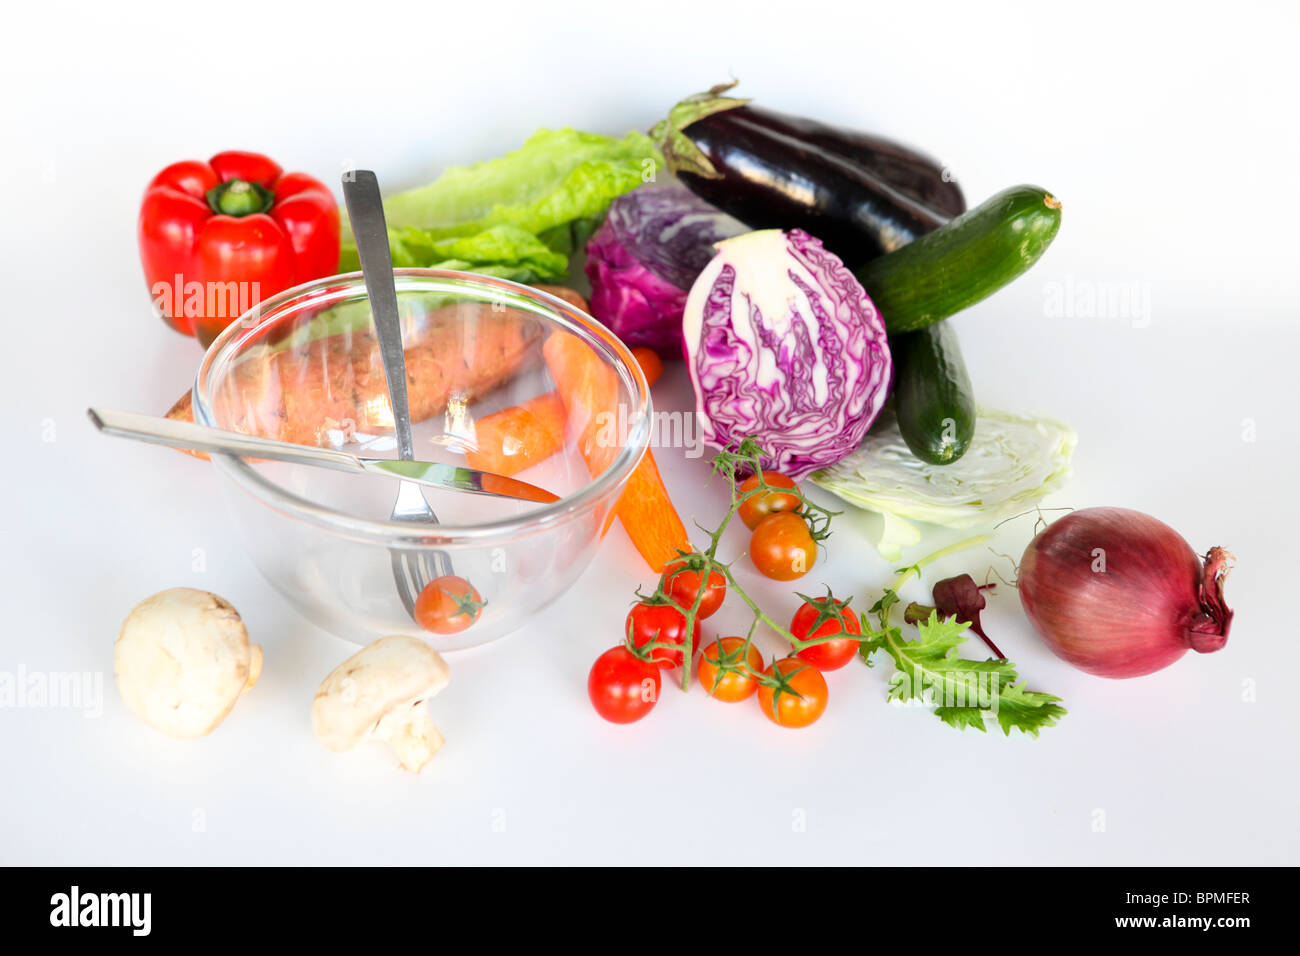 Des légumes frais et un bol à salade. Ensemble les ingrédients de la salade non coupée sur fond blanc Banque D'Images